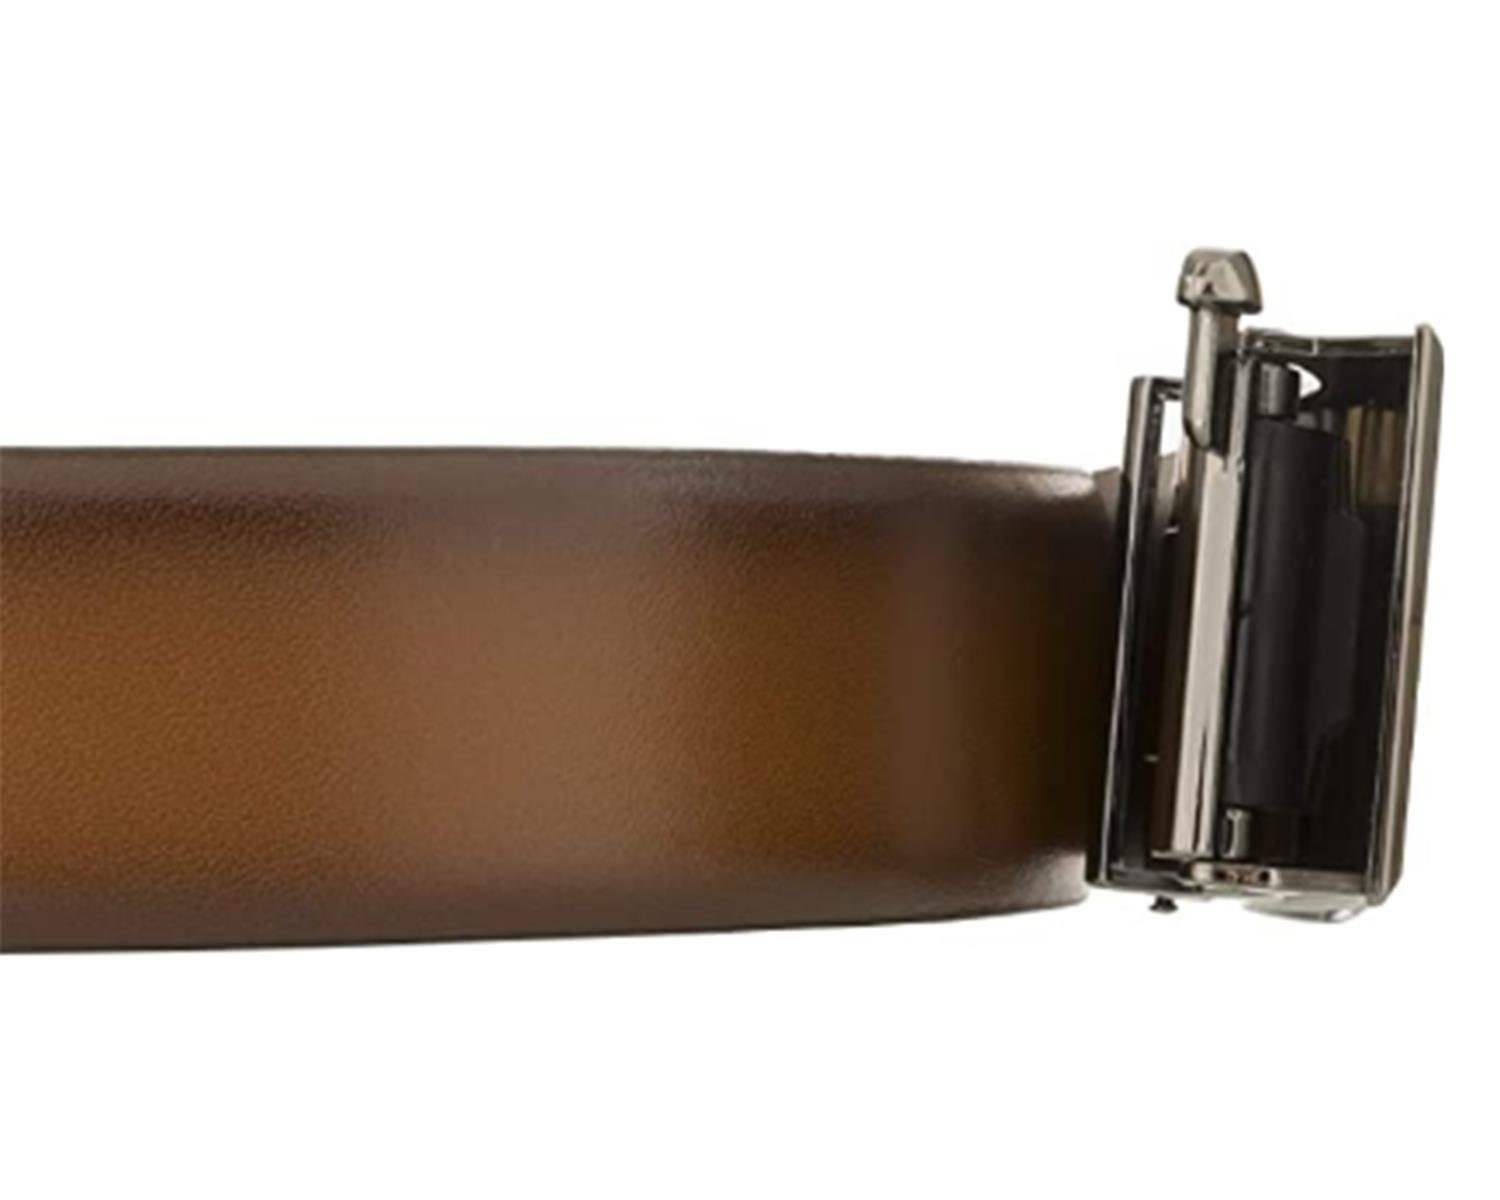 LLOYD Men’s Belts Ledergürtel bombiert Kantenfinish, 35mm, LLOYD-Automatic-Gürtel cognac kürzbar